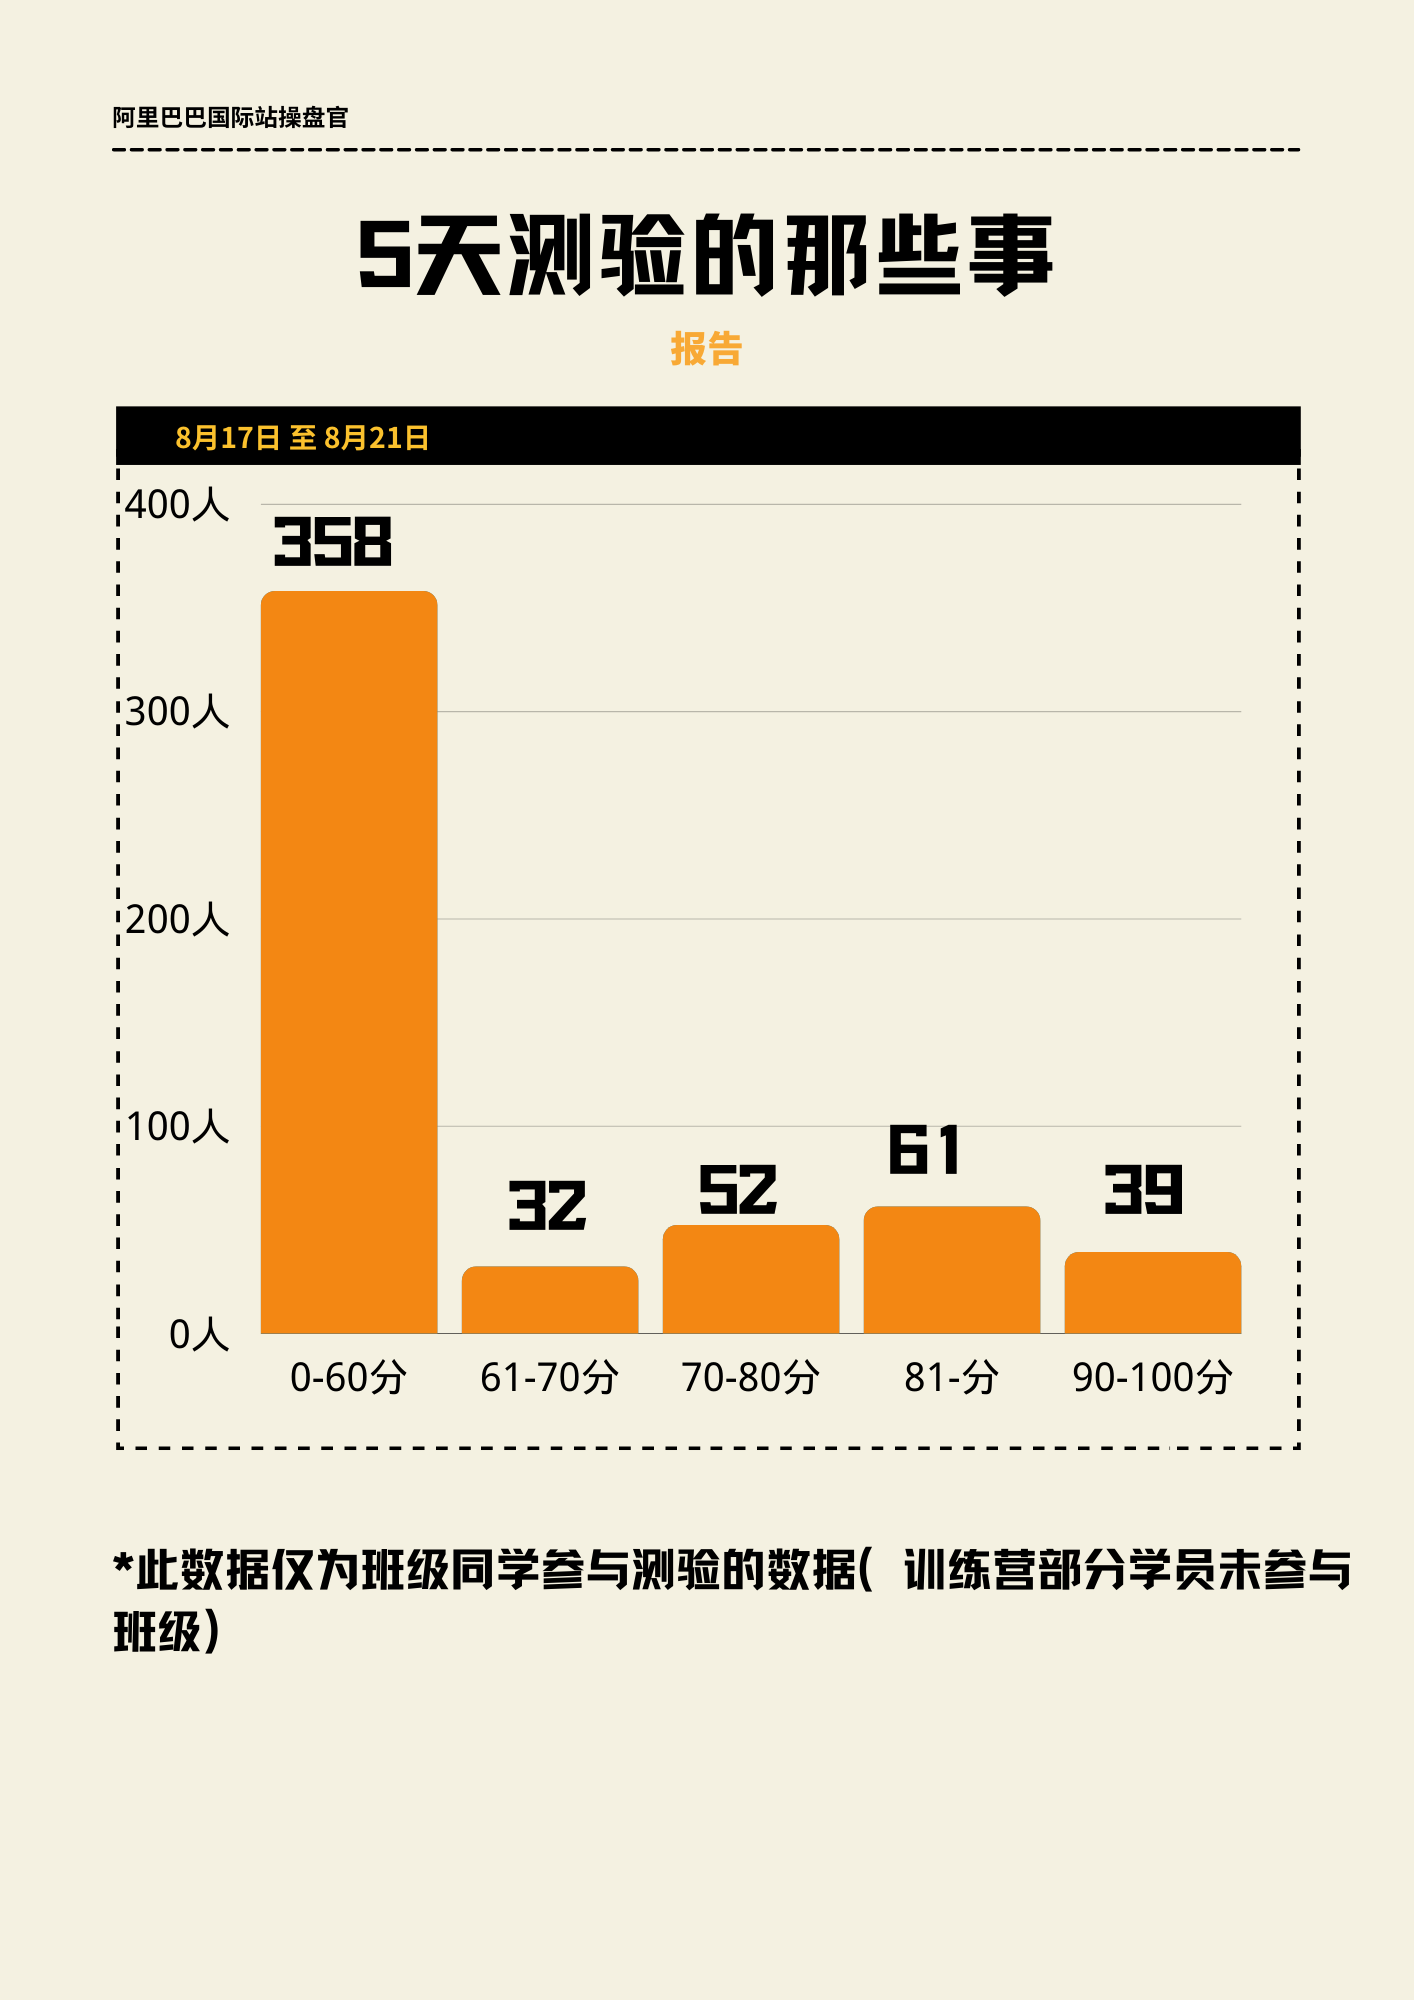 黑黄色简洁环保分享中文报告 (1).png